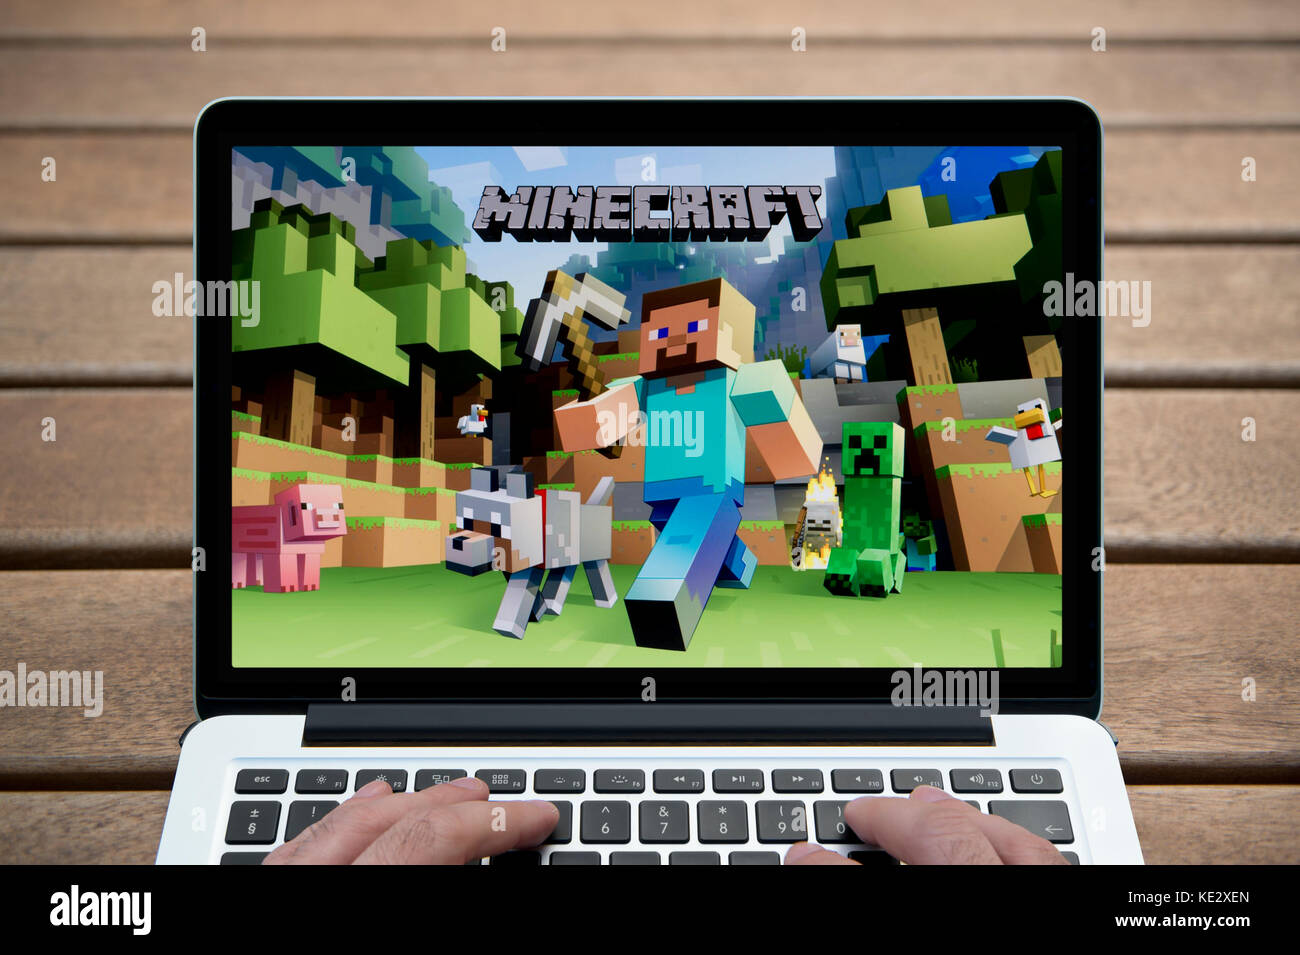 Le jeu Minecraft sur l'écran d'un ordinateur portable MacBook Pro, tourné contre un banc en bois fond de plein air y compris les doigts d'un homme (rédaction uniquement) Banque D'Images